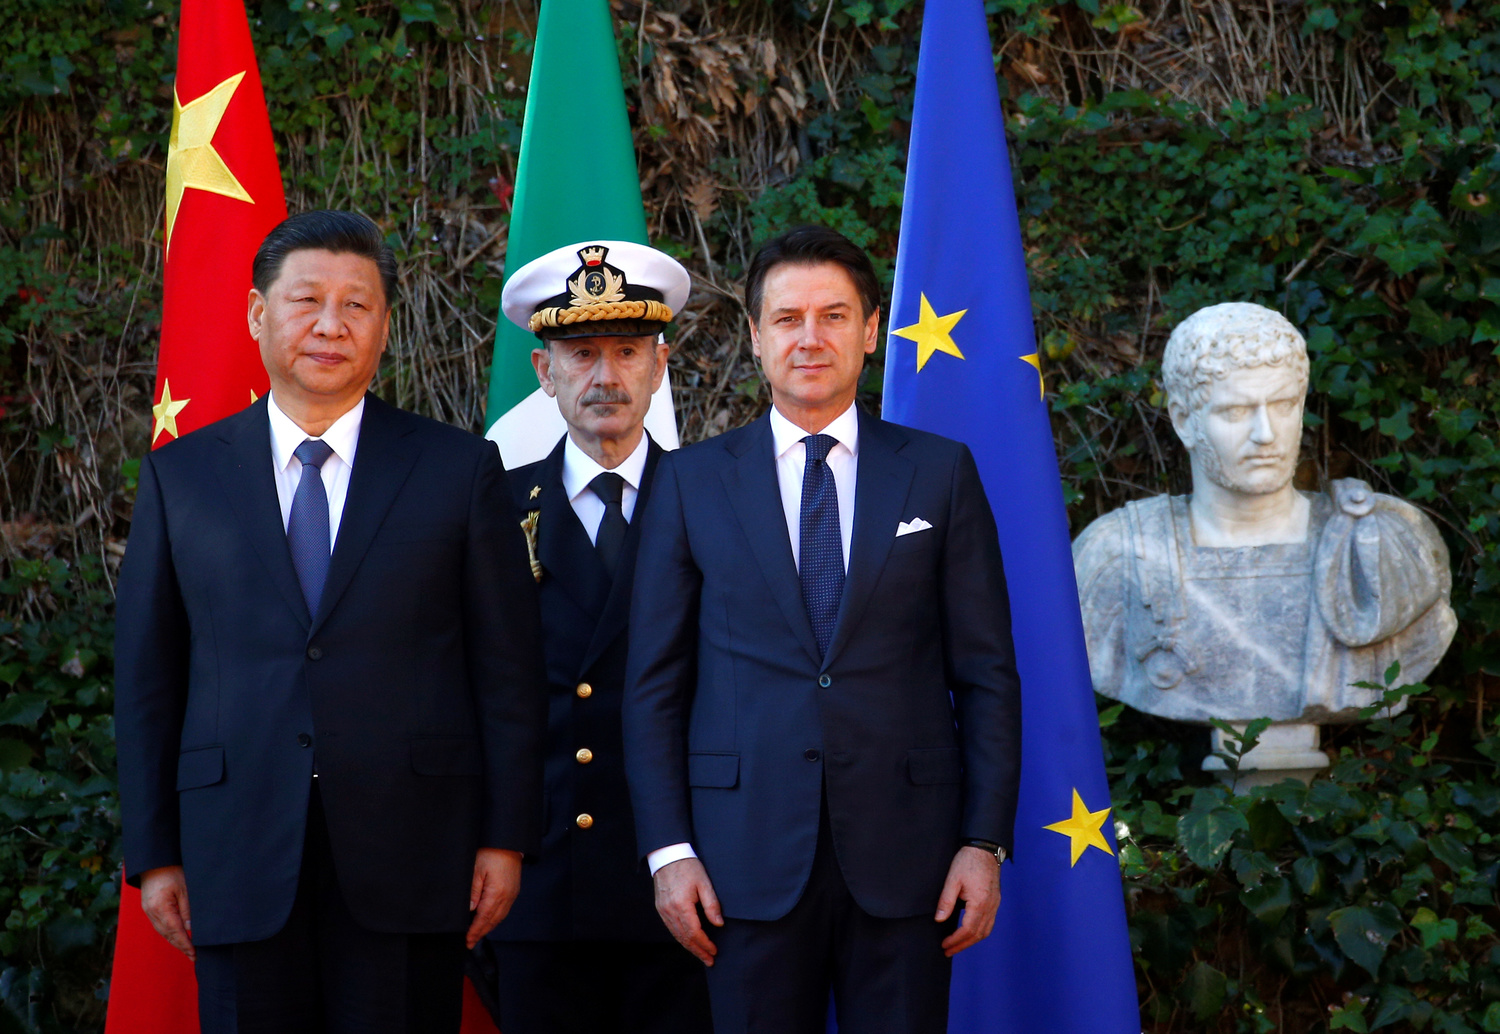 Il Presidente cinese Xi Jinping e il Primo Ministro italiano Giuseppe Conte durante una cerimonia di benvenuto a Villa Madama a Roma, 23 marzo 2019. REUTERS/Yara Nardi